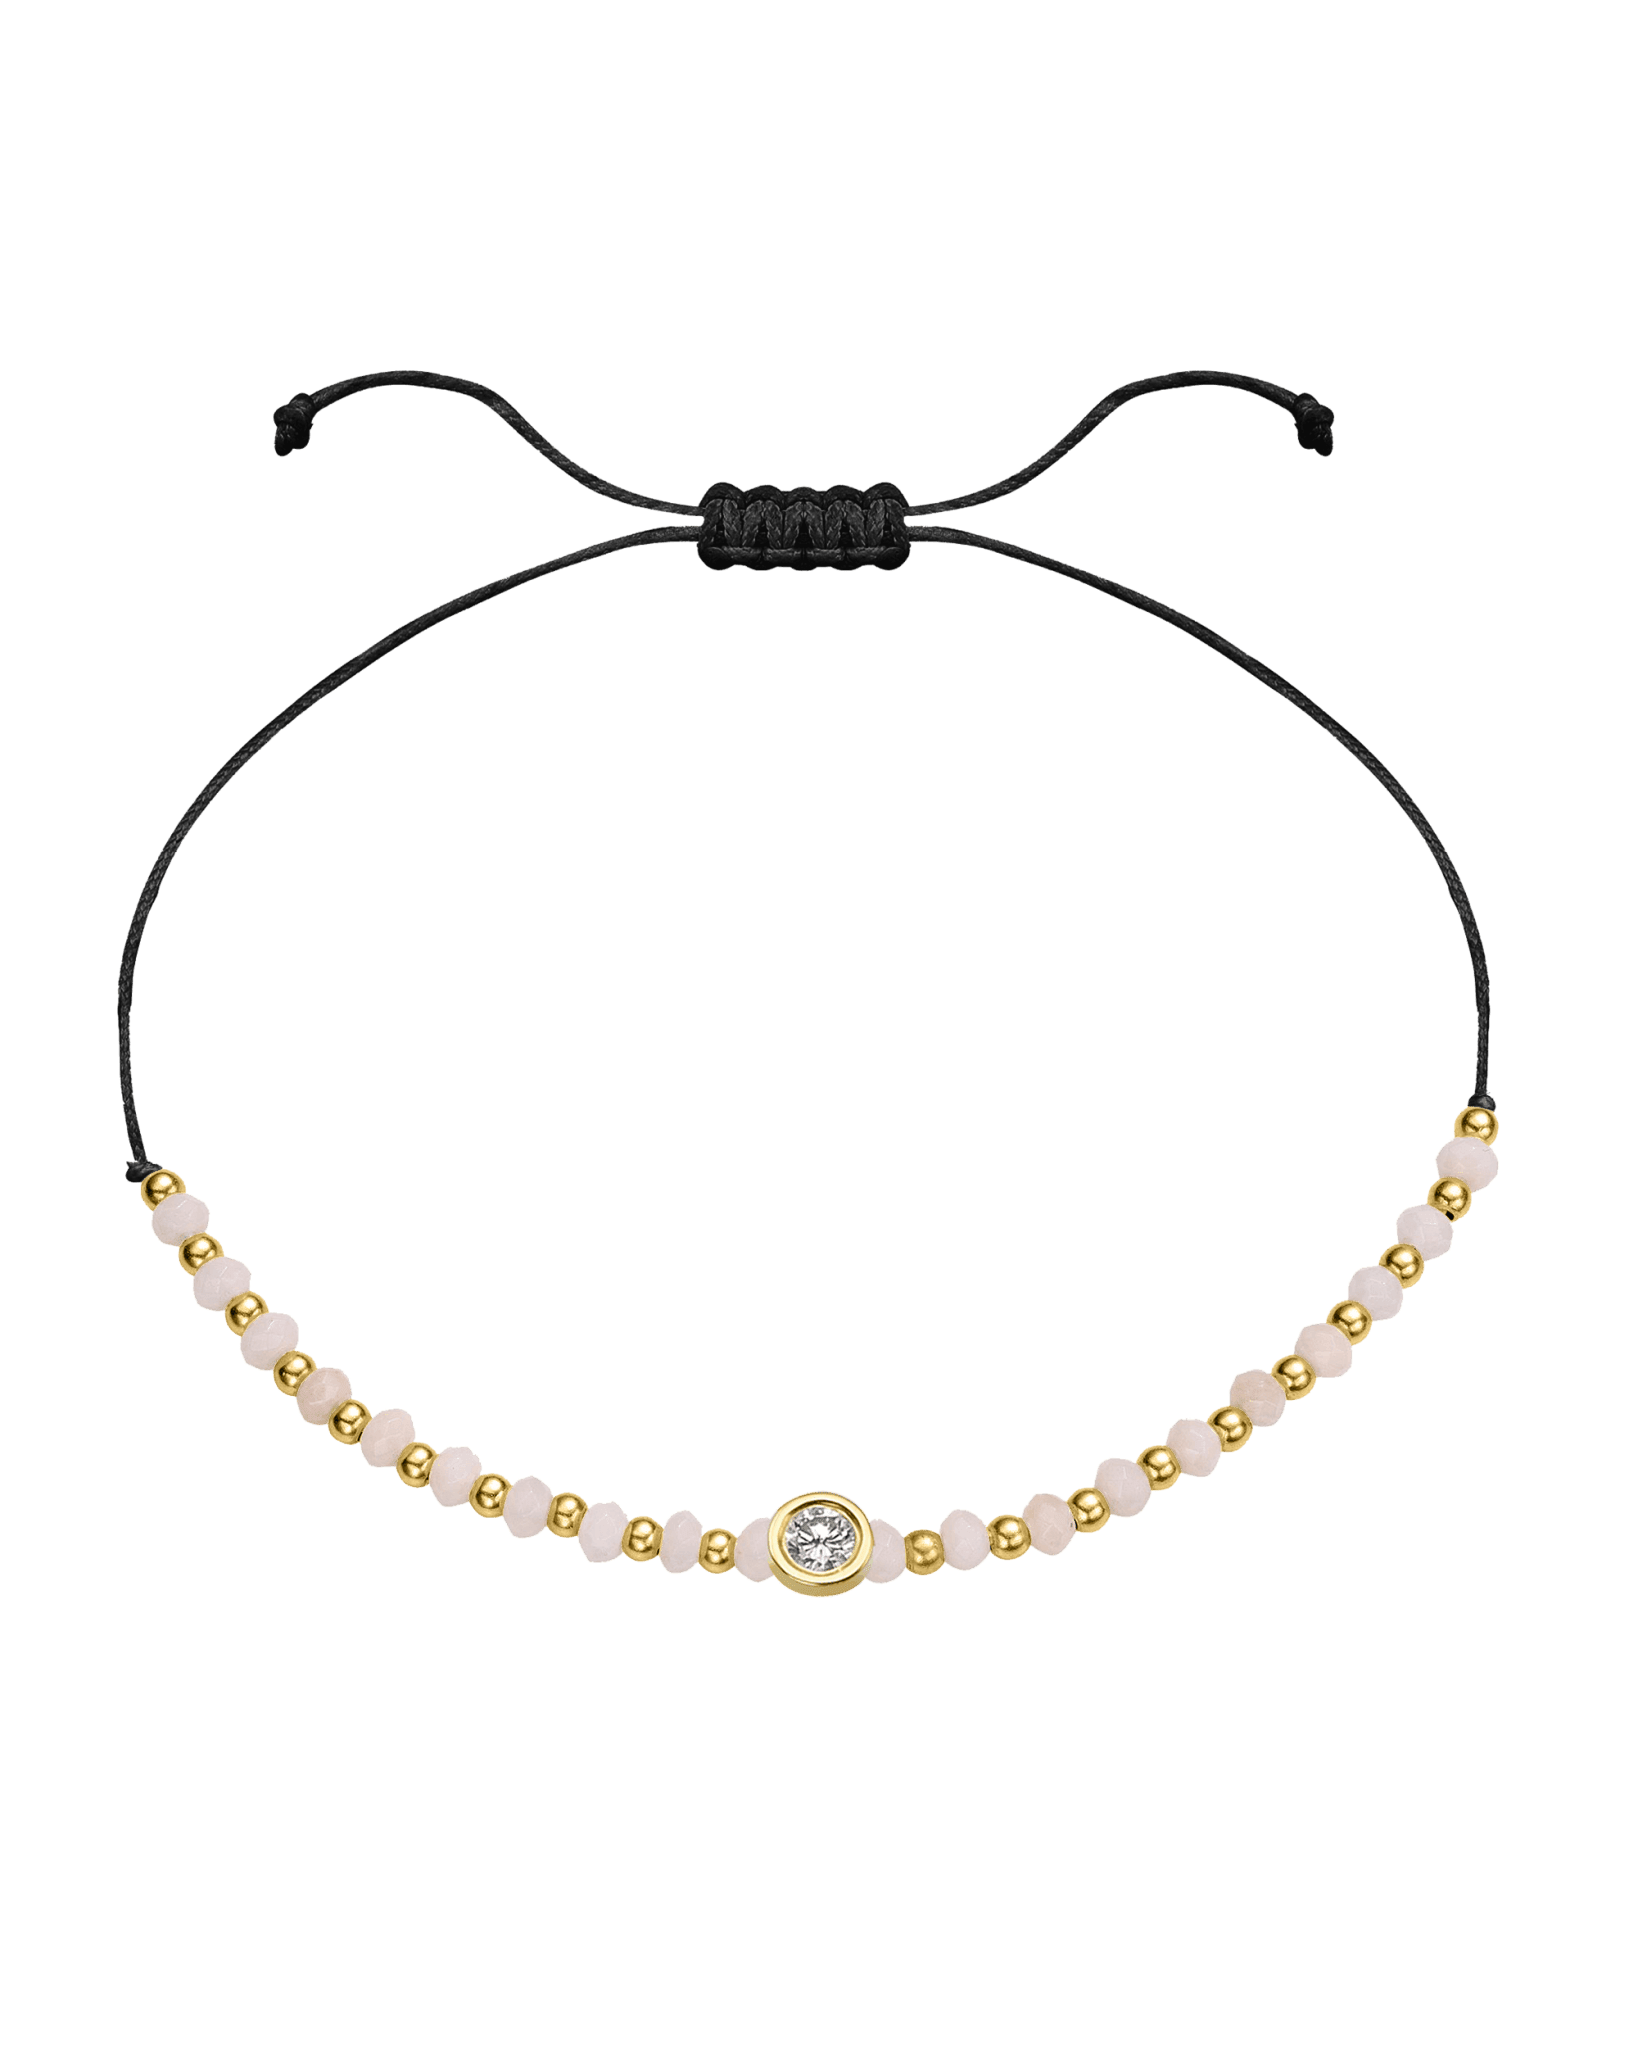 Rhodochrosite Gemstone String of Love Bracelet for Compassion - 14K Yellow Gold Bracelet 14K Solid Gold Black Large: 0.1ct 